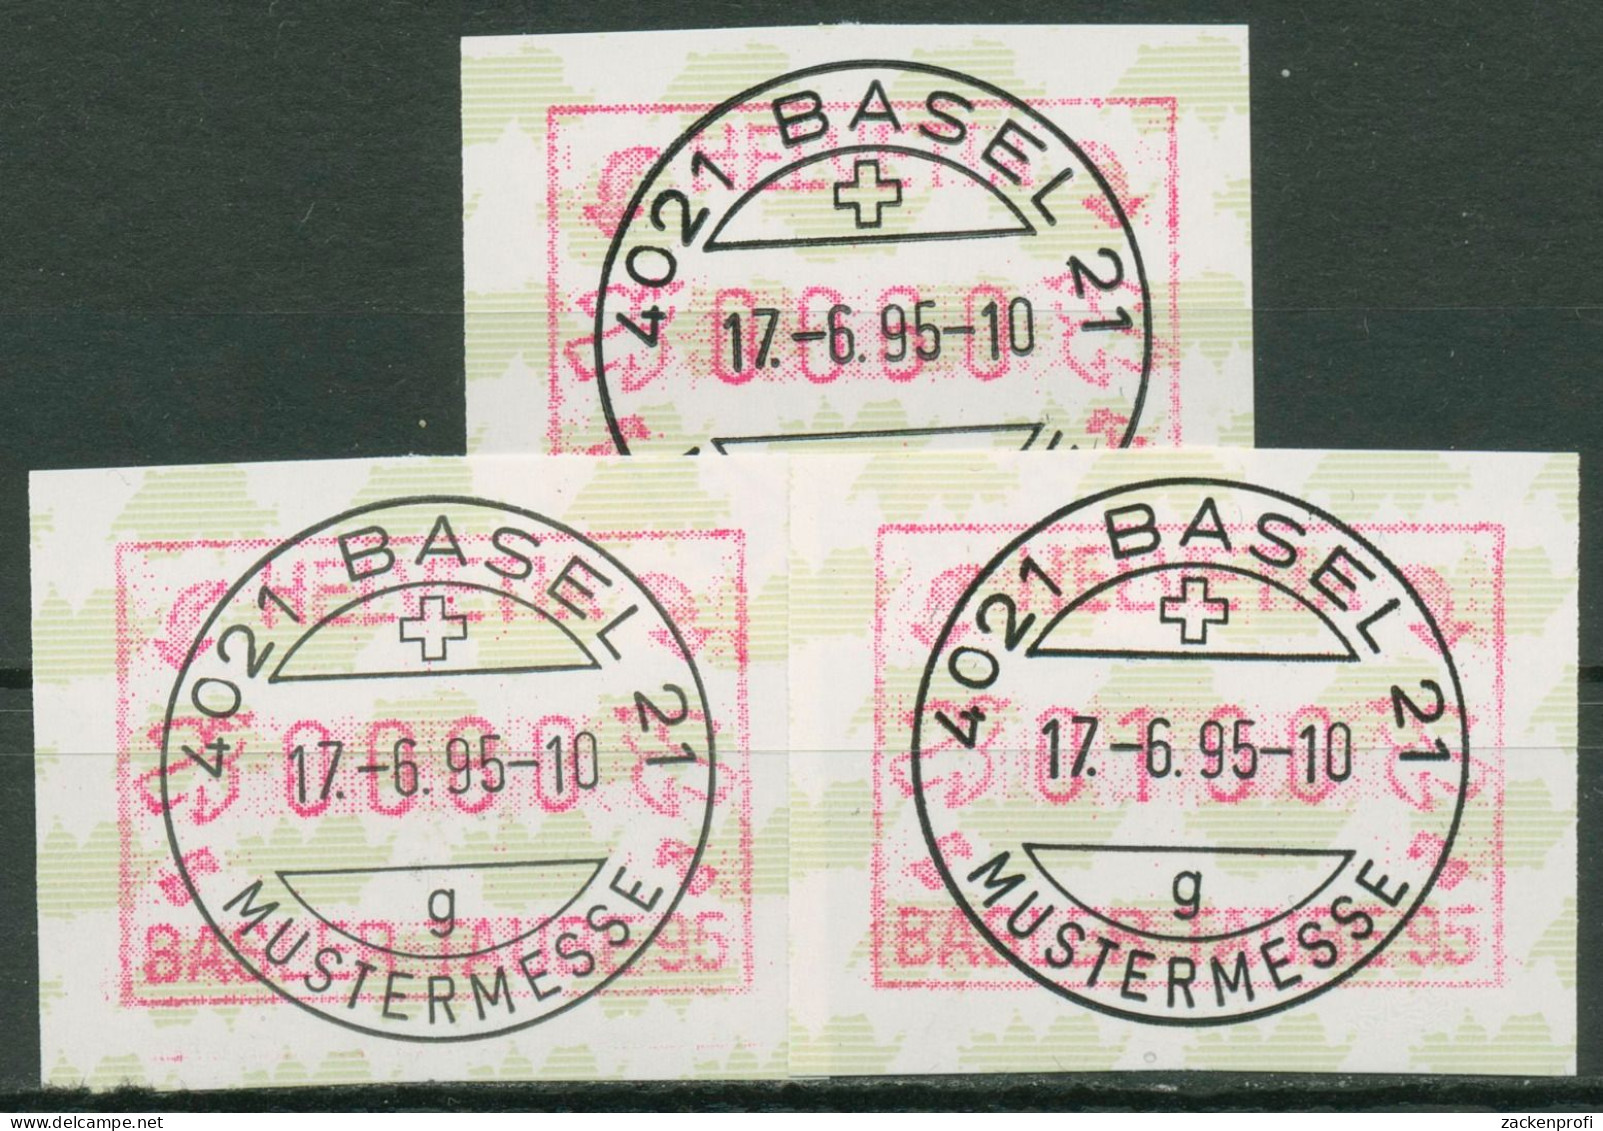 Schweiz Automatenmarken 1995 Basler Taube ATM 6 S 1 Gestempelt - Automatenzegels